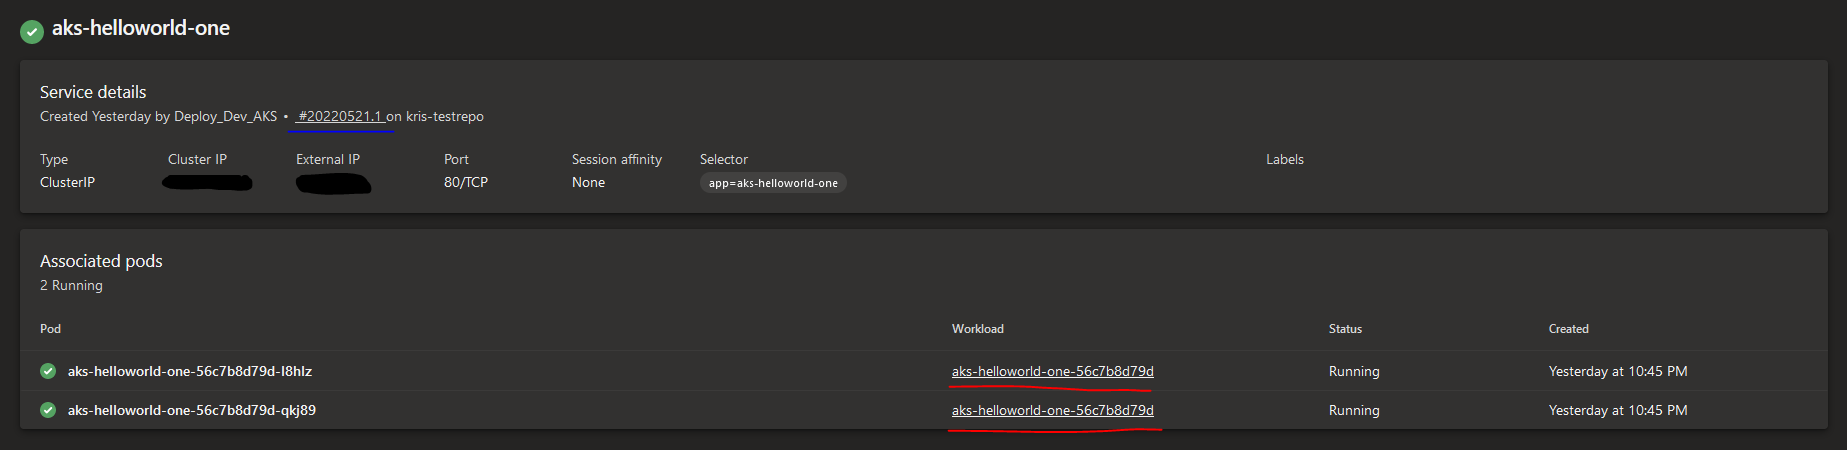 Screenshot of Azure DevOps Services section